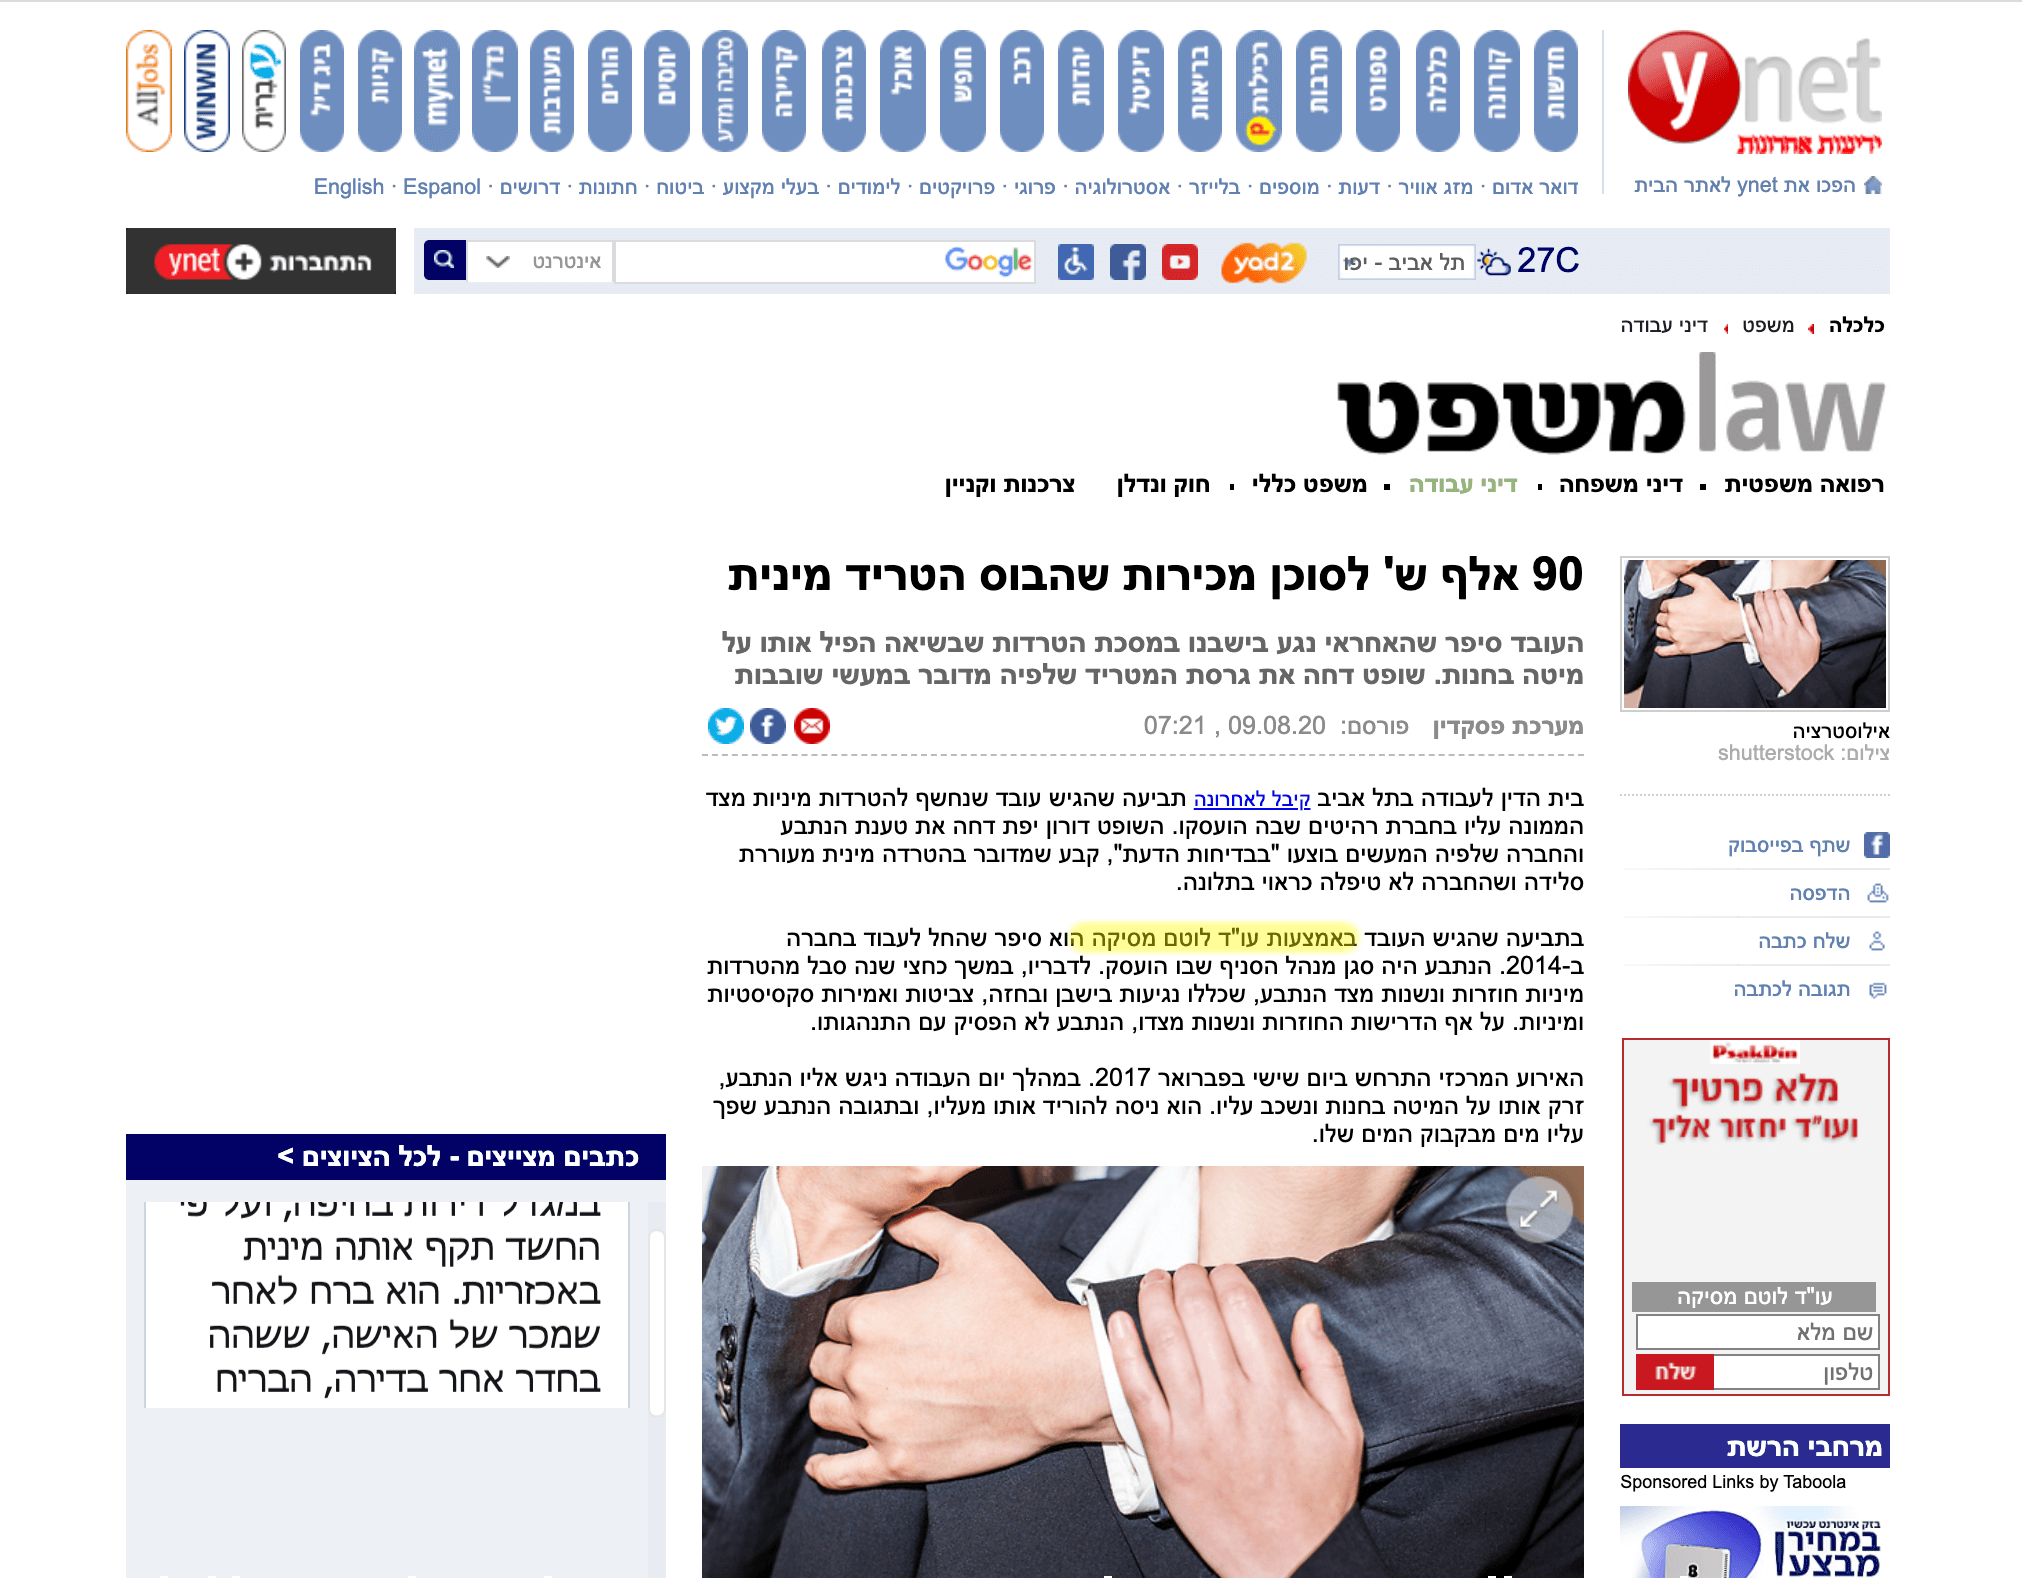 כתבה מאתר ynet – תשעים אלף ש' לסוכן מכירות שהבוס הטריד מינית